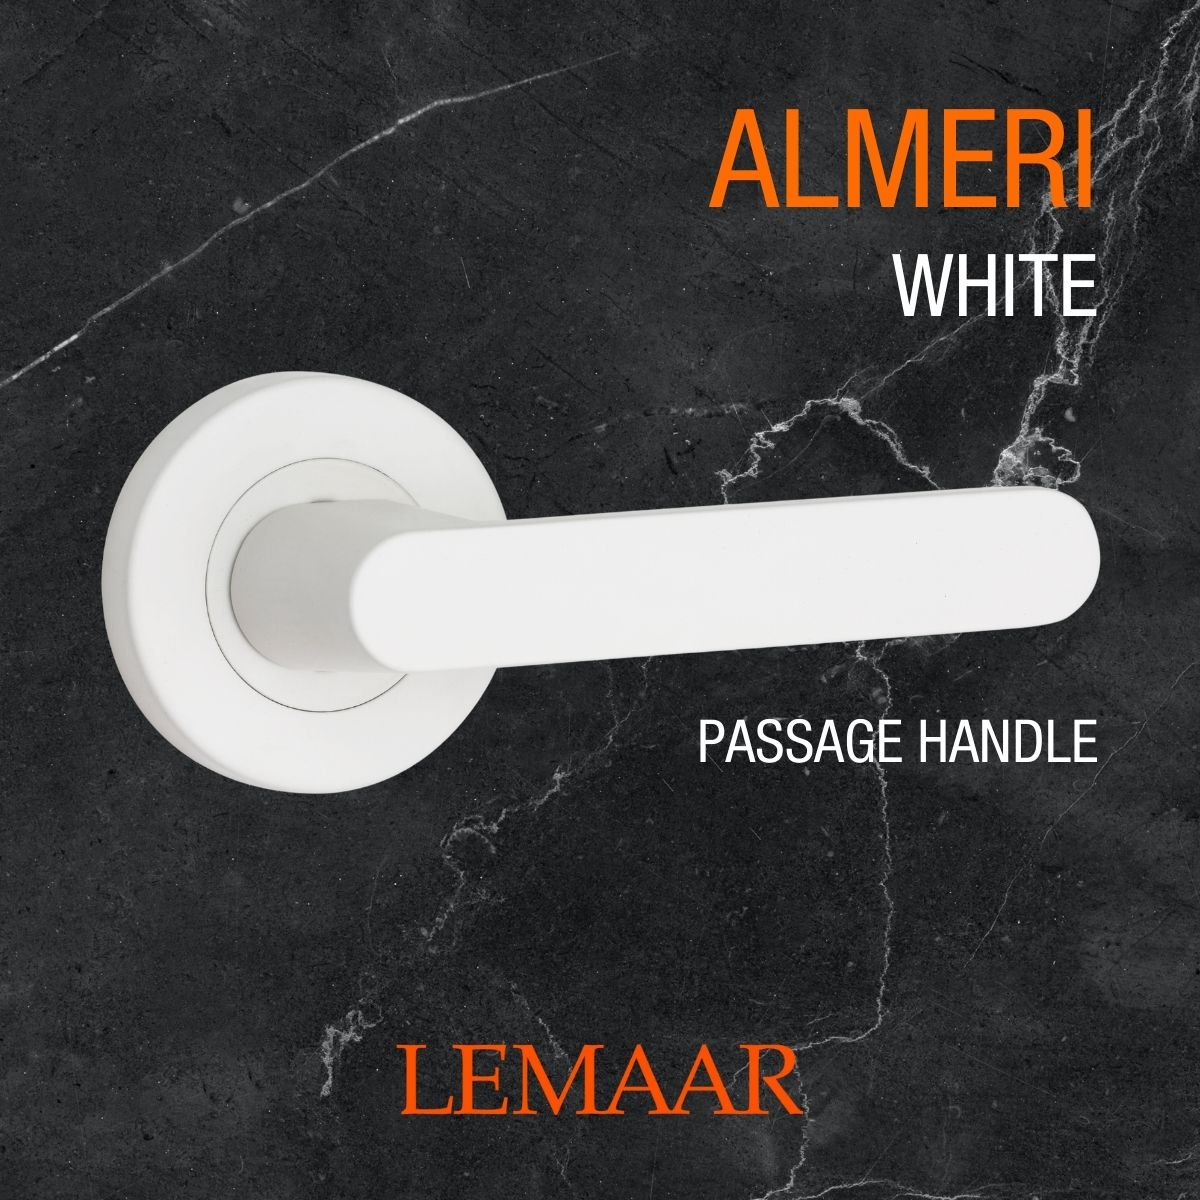 almeri white door handle lemaar v3